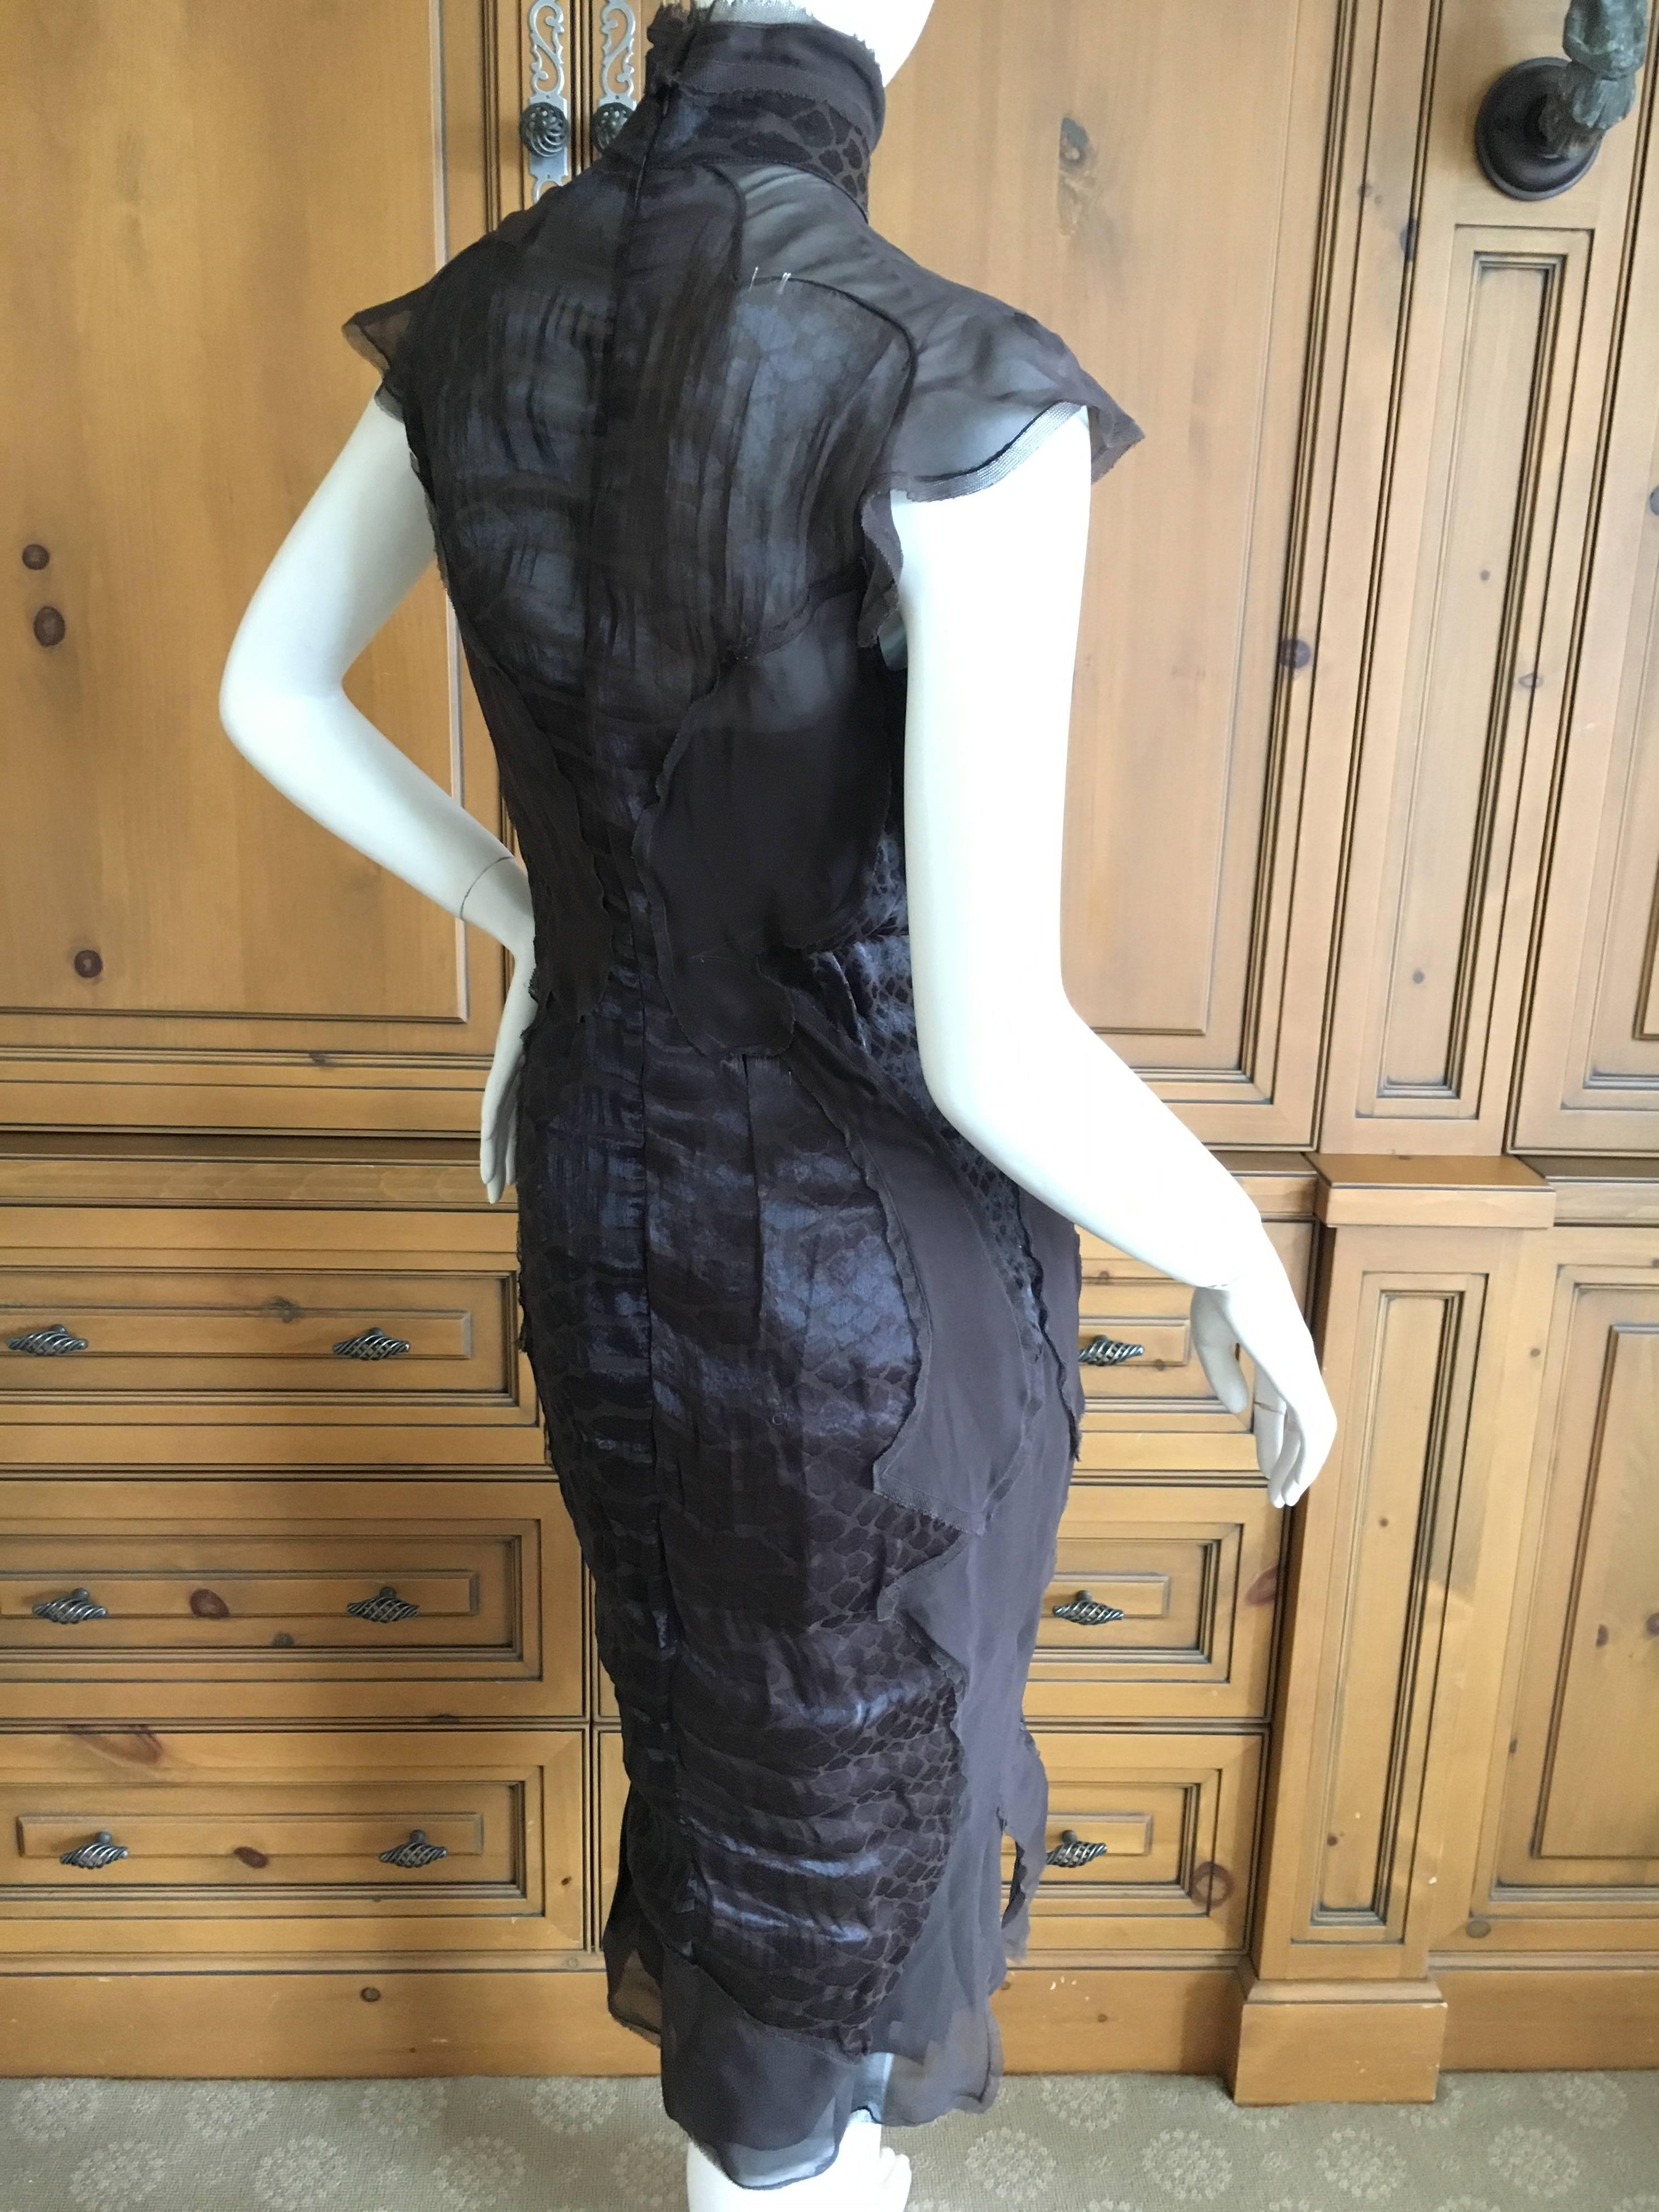 Yves Saint Laurent by Tom Ford Sheer Reptile Print Dress & Slip For Sale 1